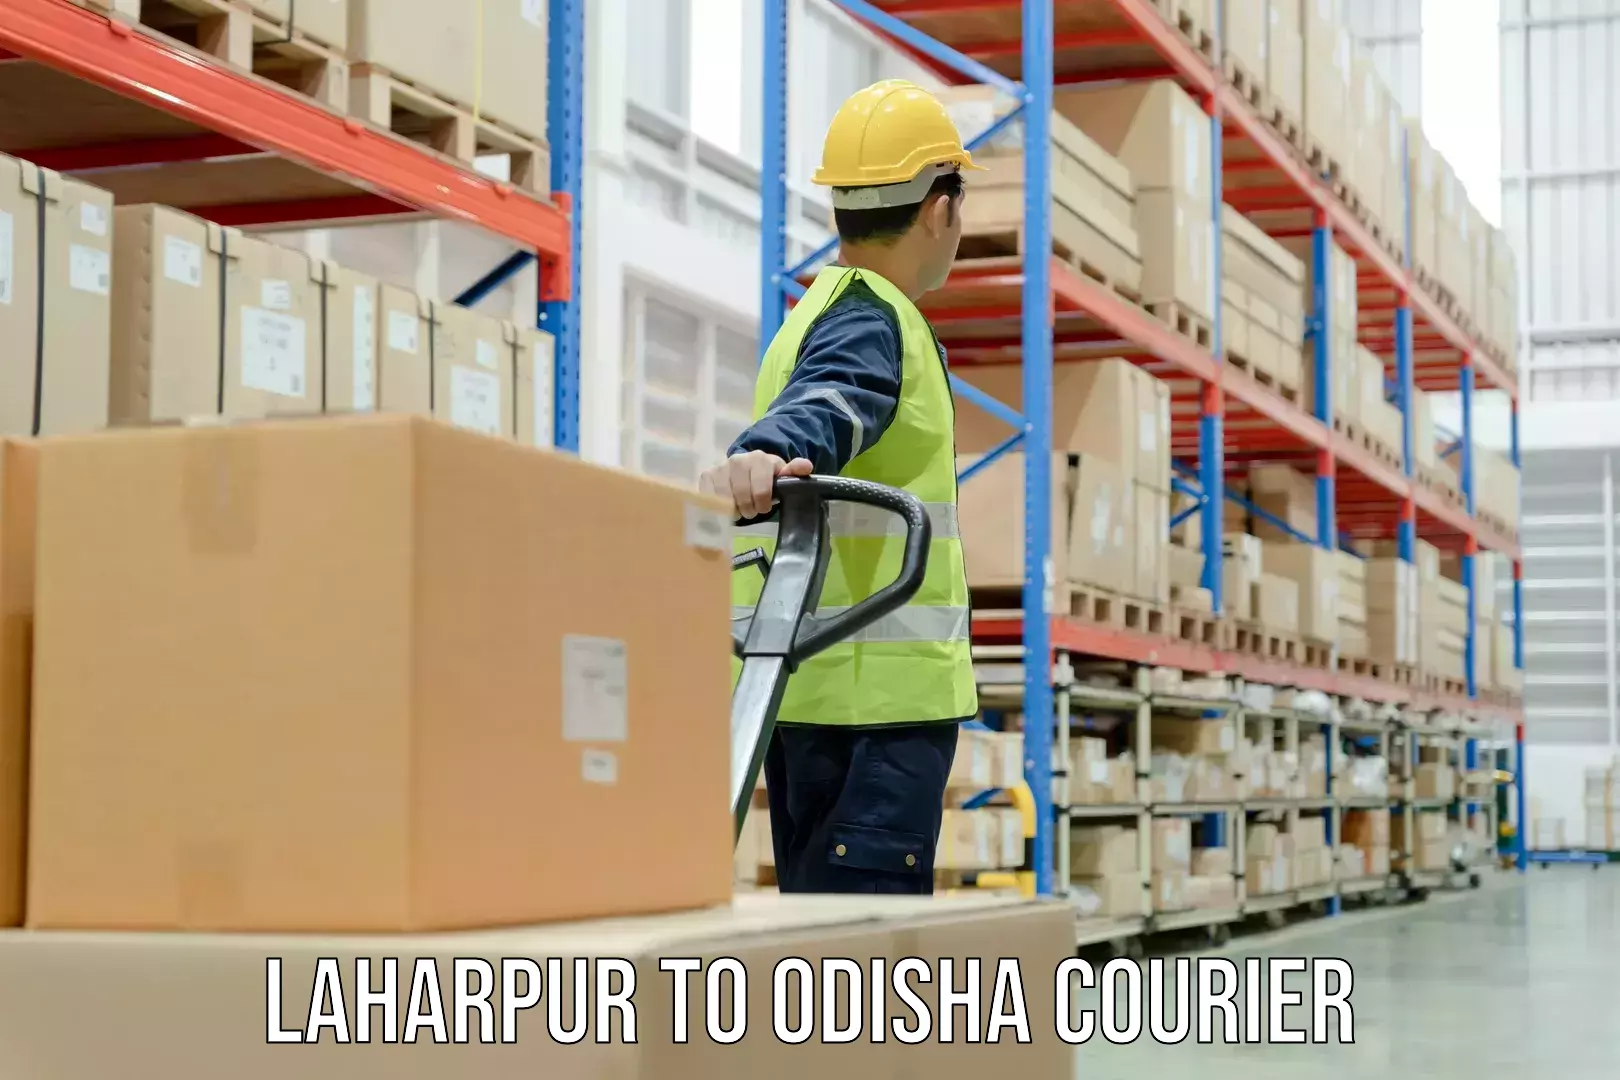 24/7 shipping services Laharpur to Balangir